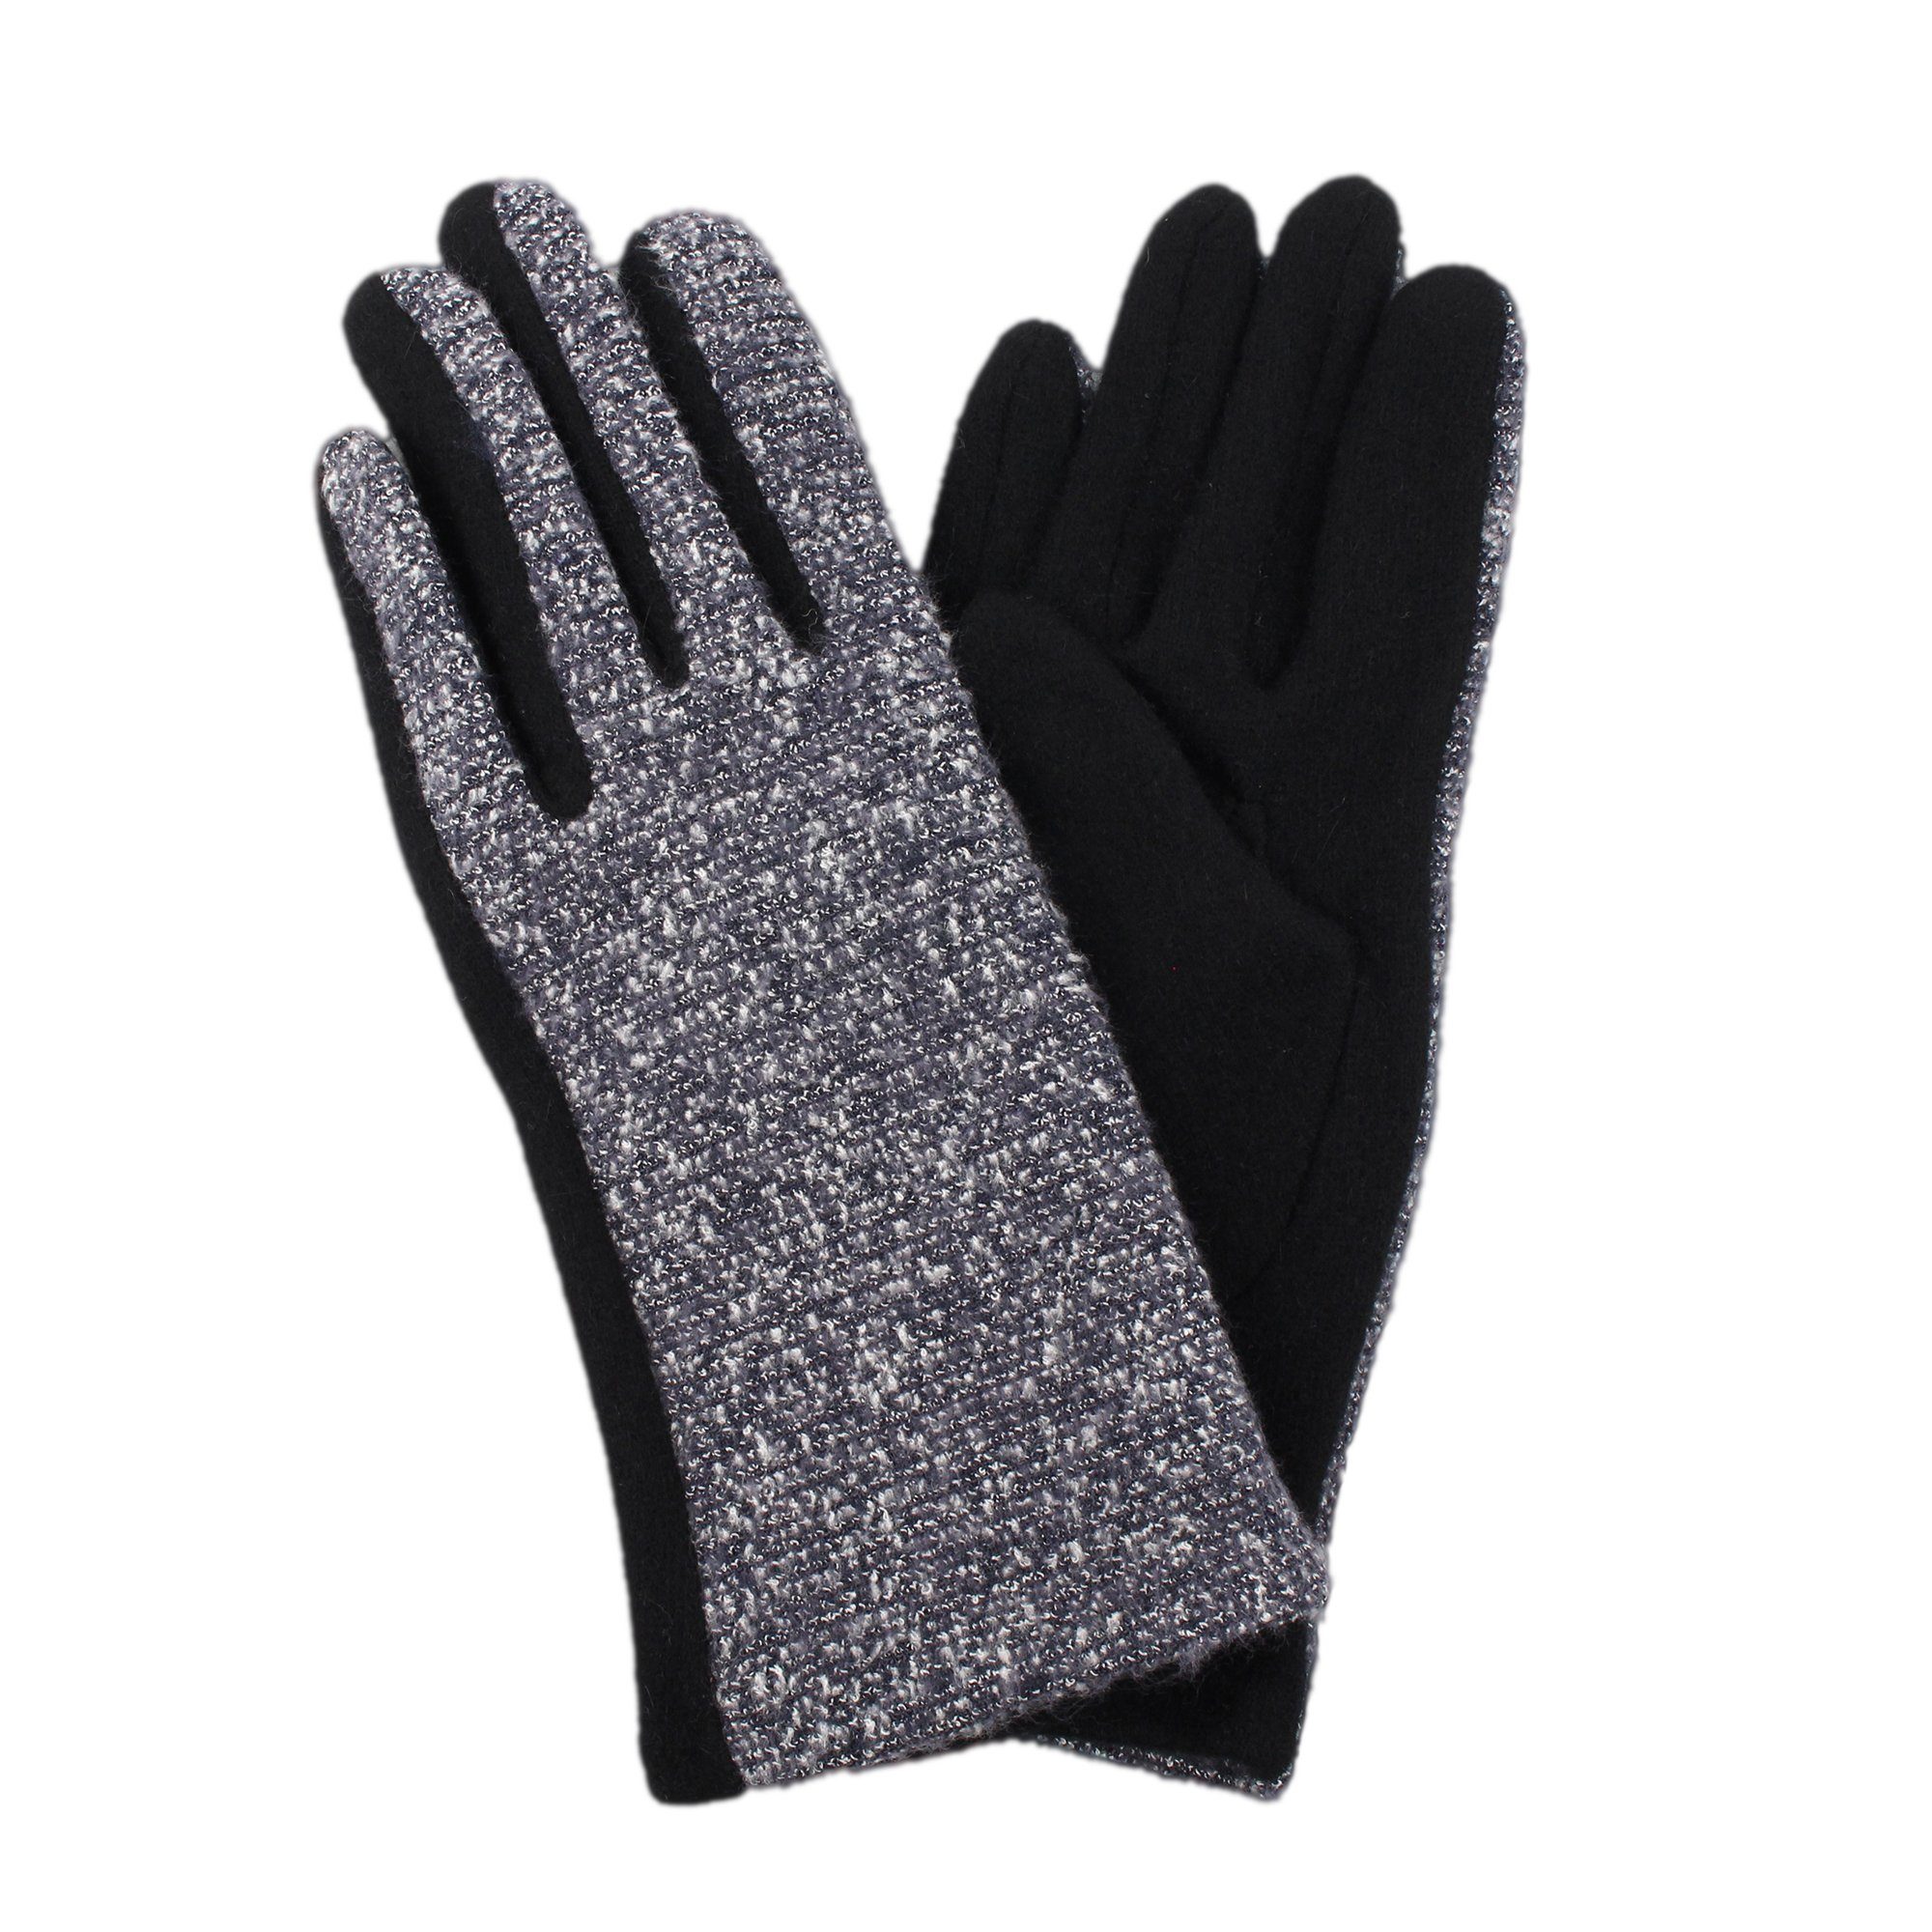 ZEBRO blau Handschuhe Fleecehandschuhe